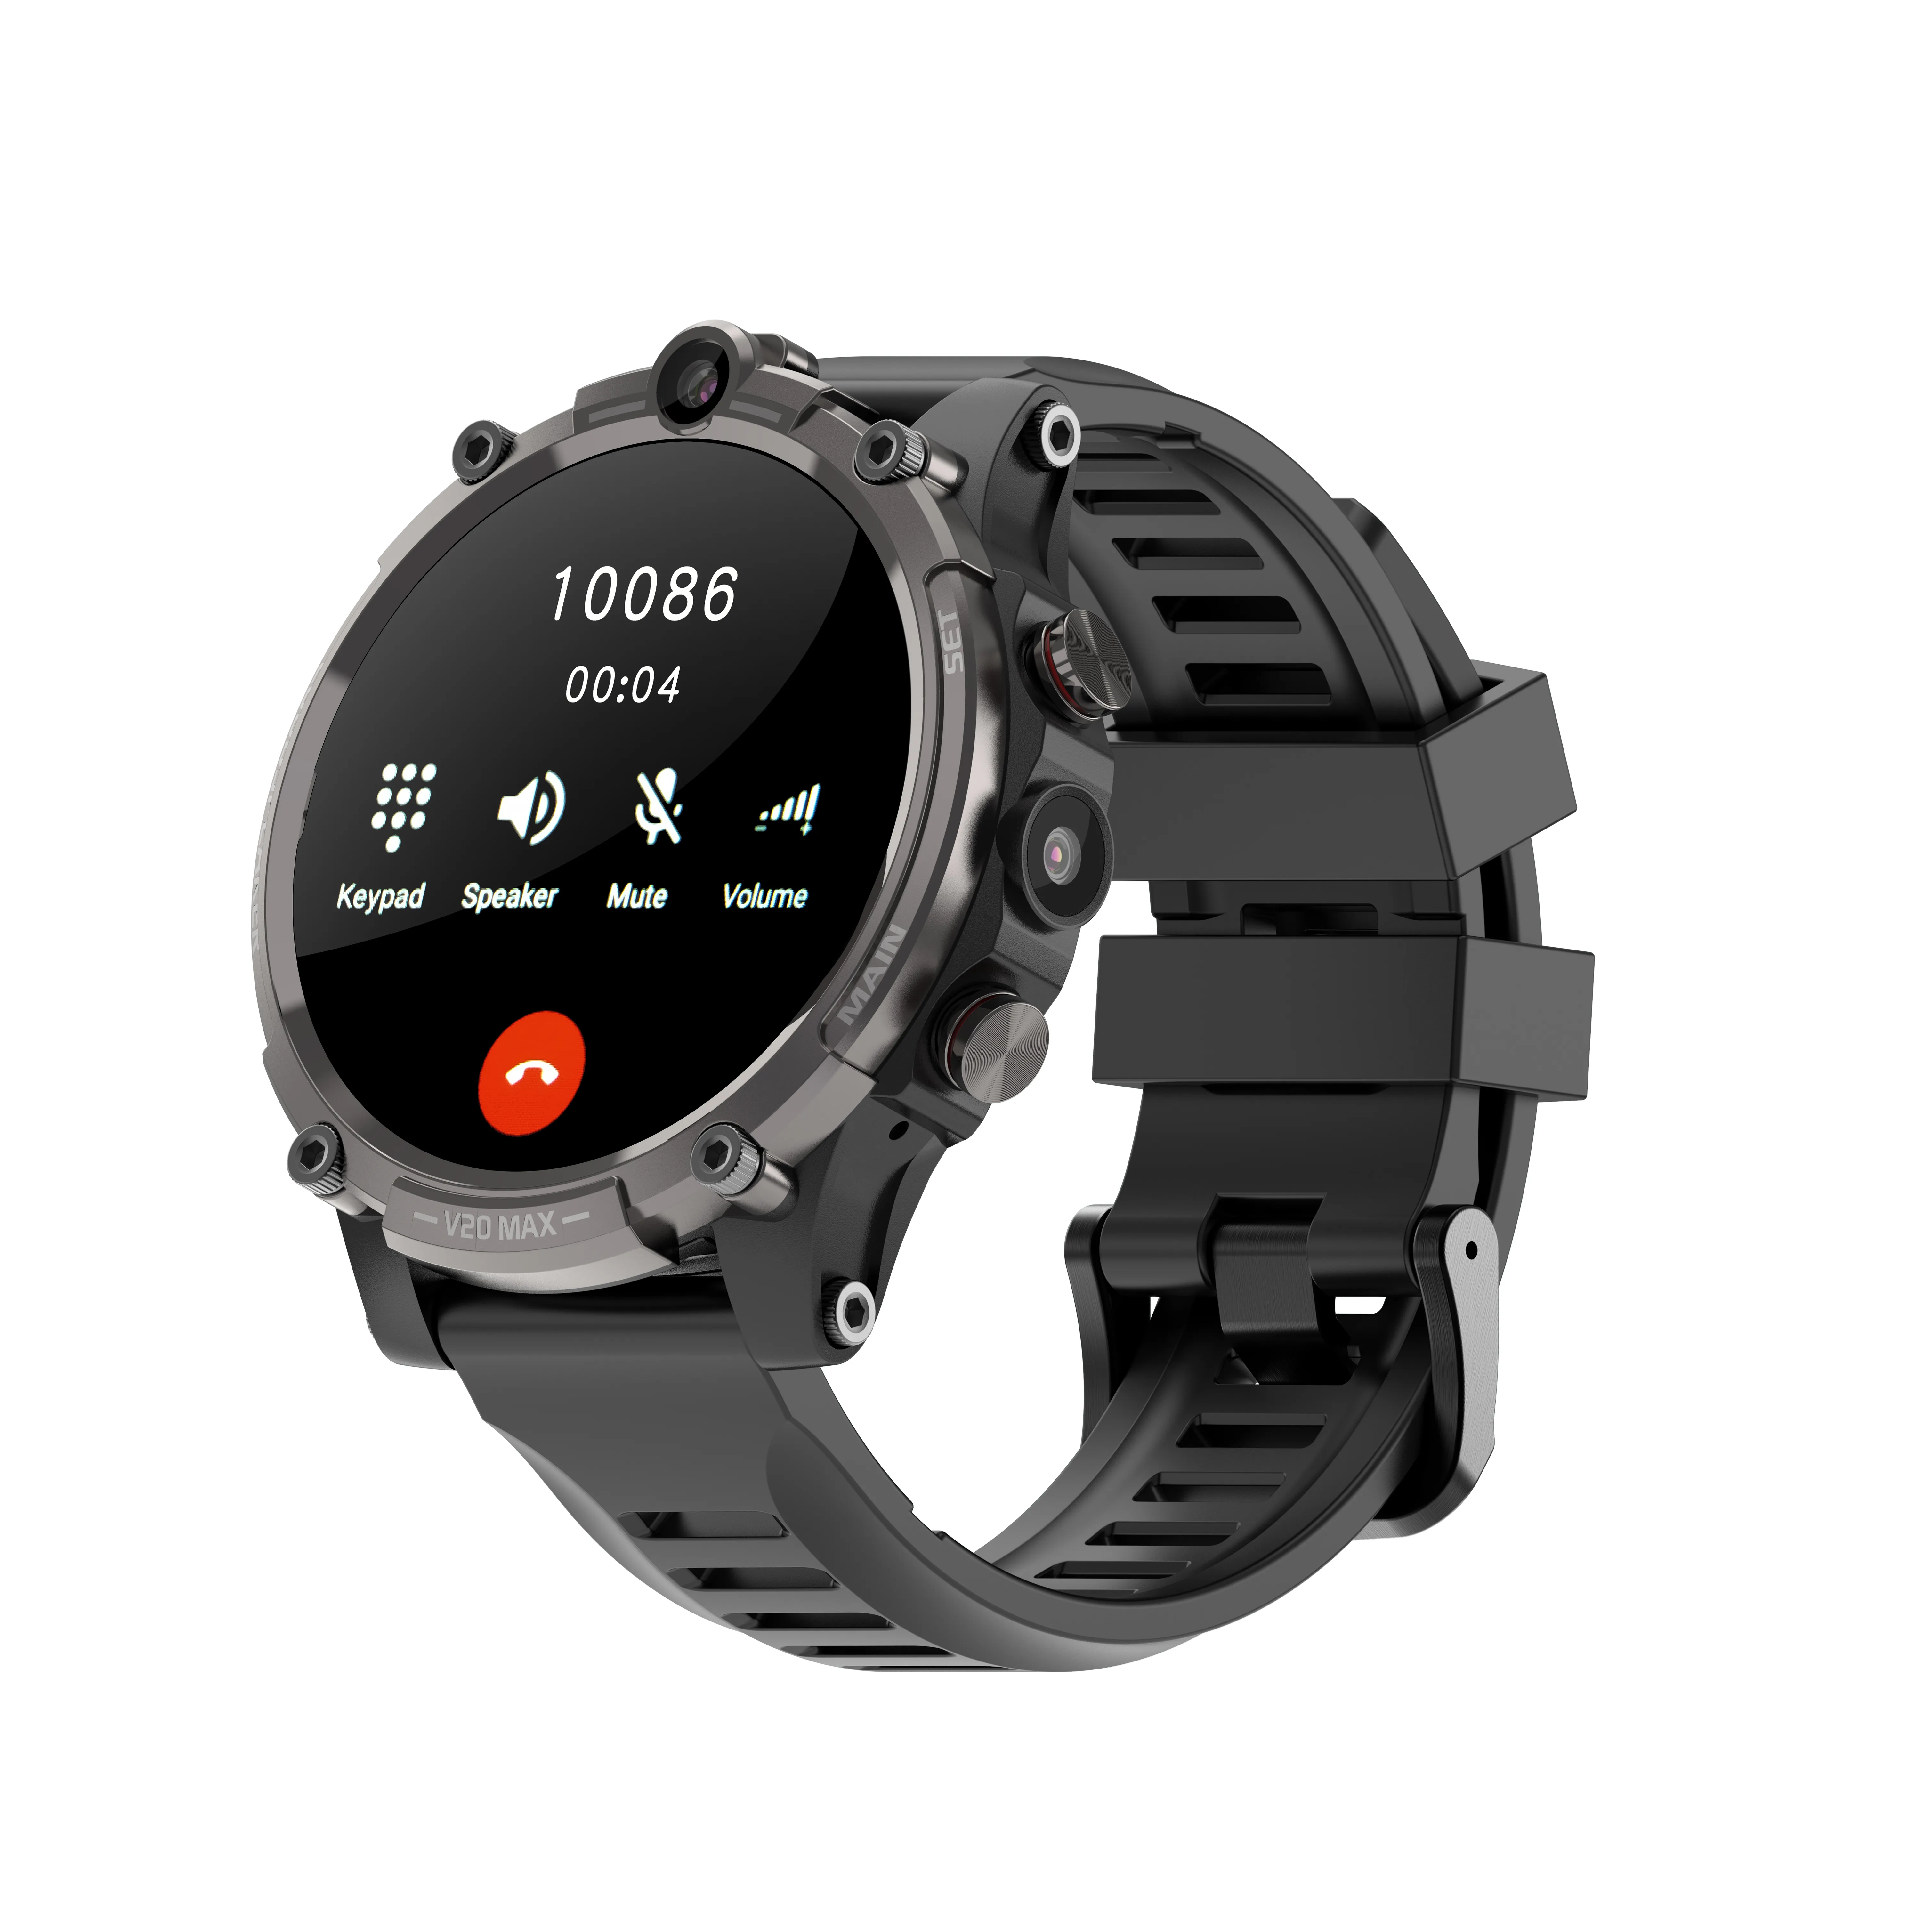 4G telefony komórkowe LTE karta SIM Smart Watch Fitness Tracker Sports IP68 Wodoodporne ciśnienie tętna GPS Smartwatch iOS Android Telefon zegarki 128 GB 2MP Kamery